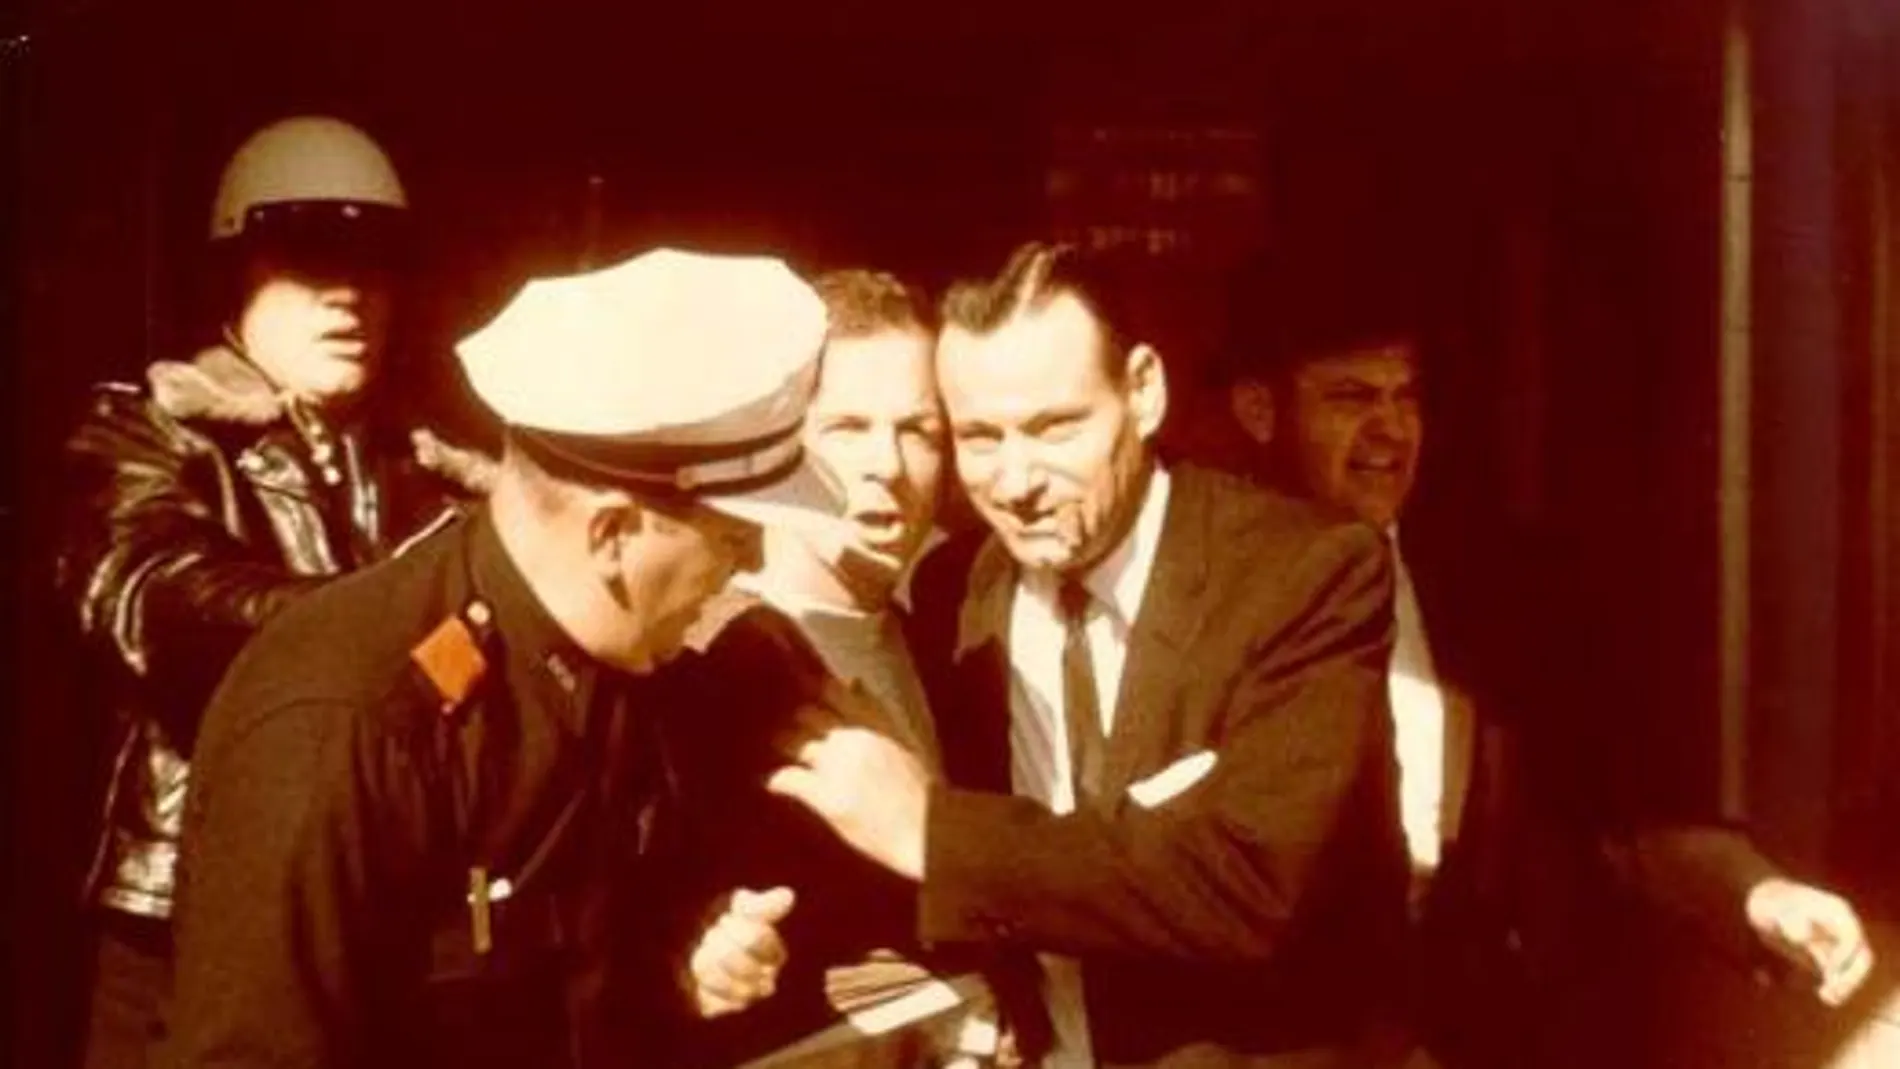 Momento de la detención de Oswald en el edificio de Dallas desde donde disparó a Kennedy. Abajo, el ataúd donde fue enterrado